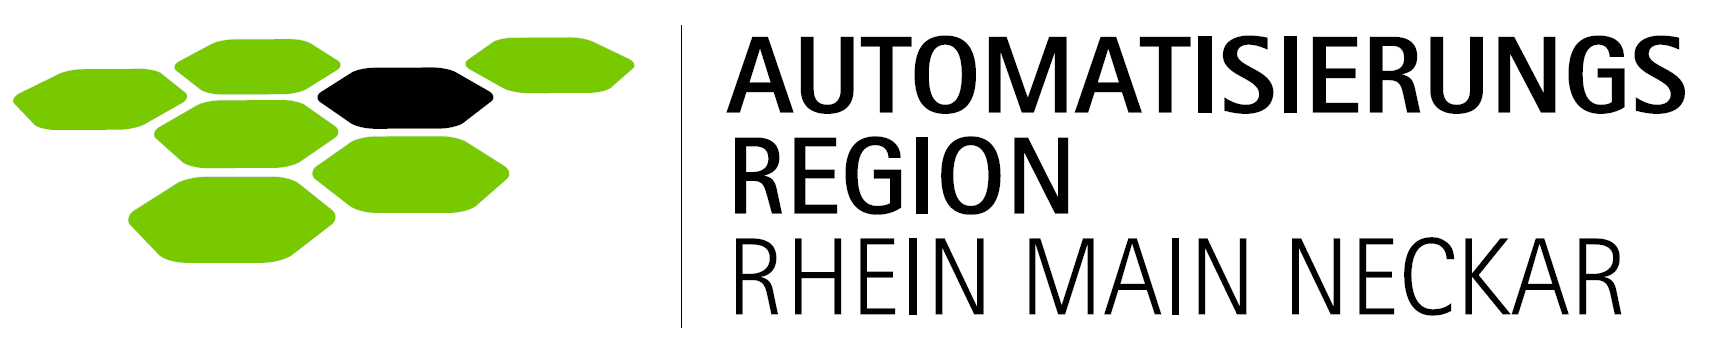 Das Logo des Automatisierungsregion Rhein Main Neckar